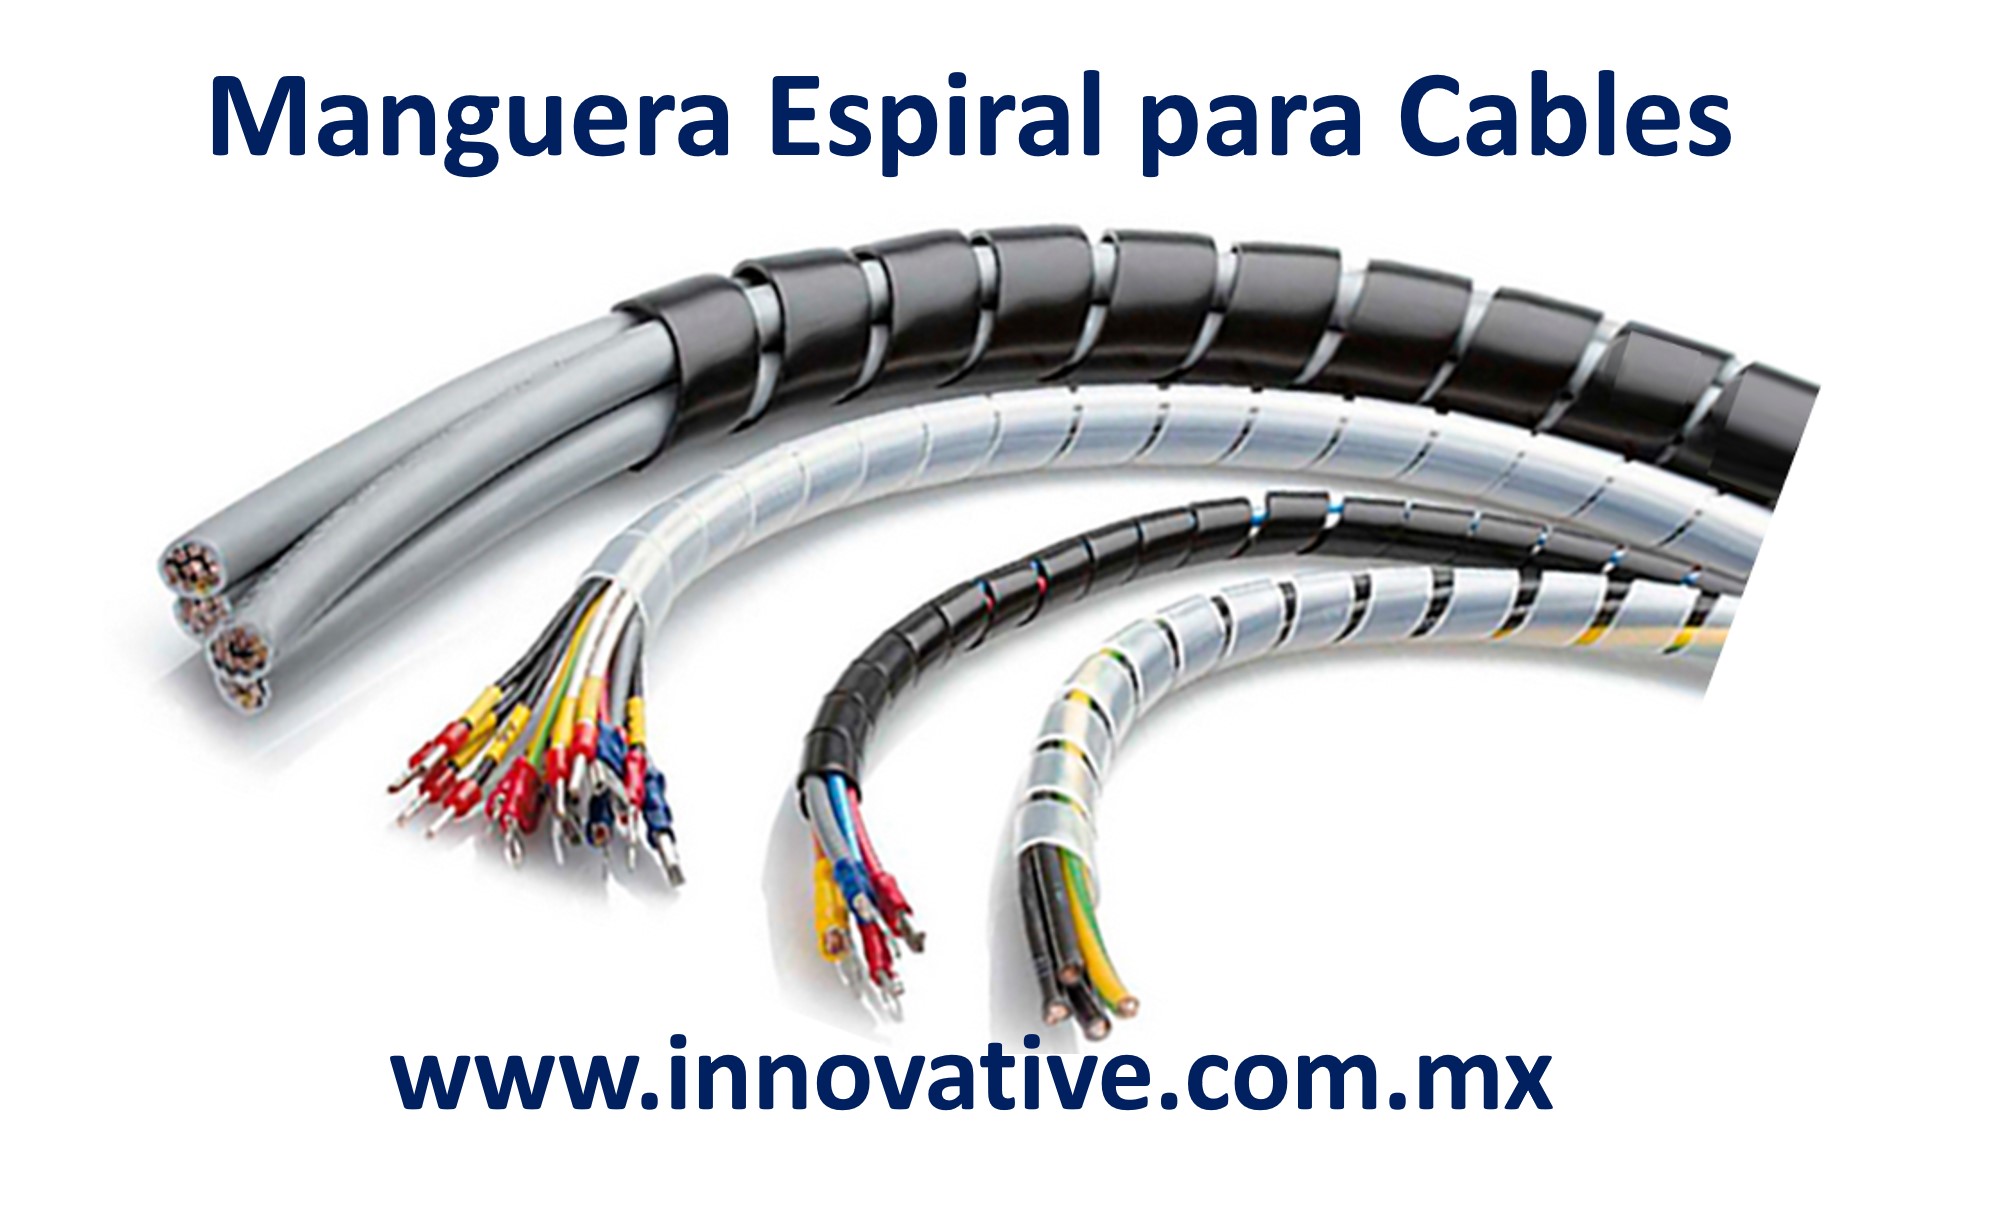 Espiral de cable cable spiralband manguera cable protección 14-80mm blanco 6 metros